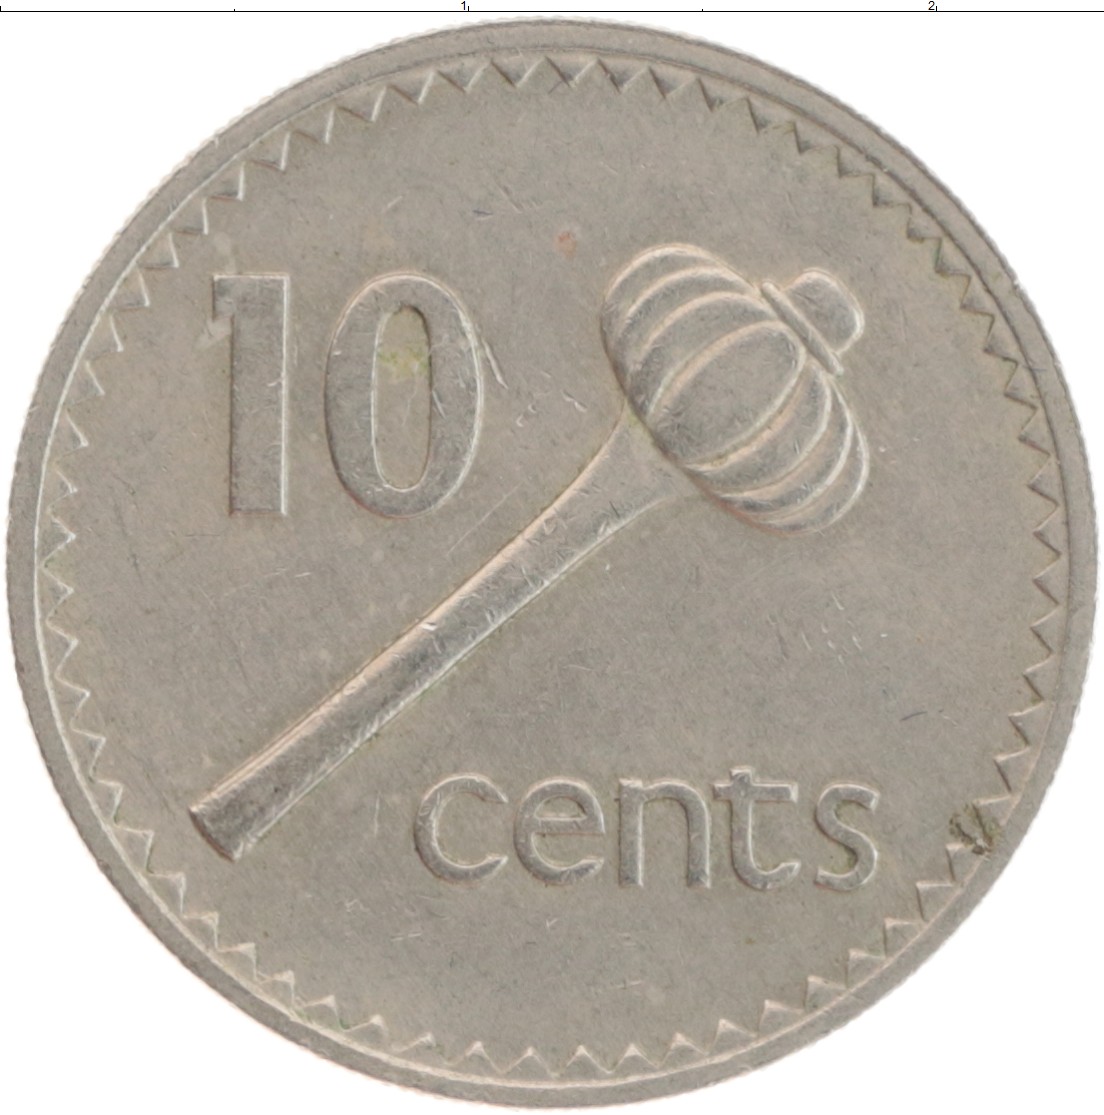 0 80 в рублях. 10 Центов 1969 Фиджи. Японская монета 10 центов. 10 Центов в рублях. Как выглядит 10 центов монетой.